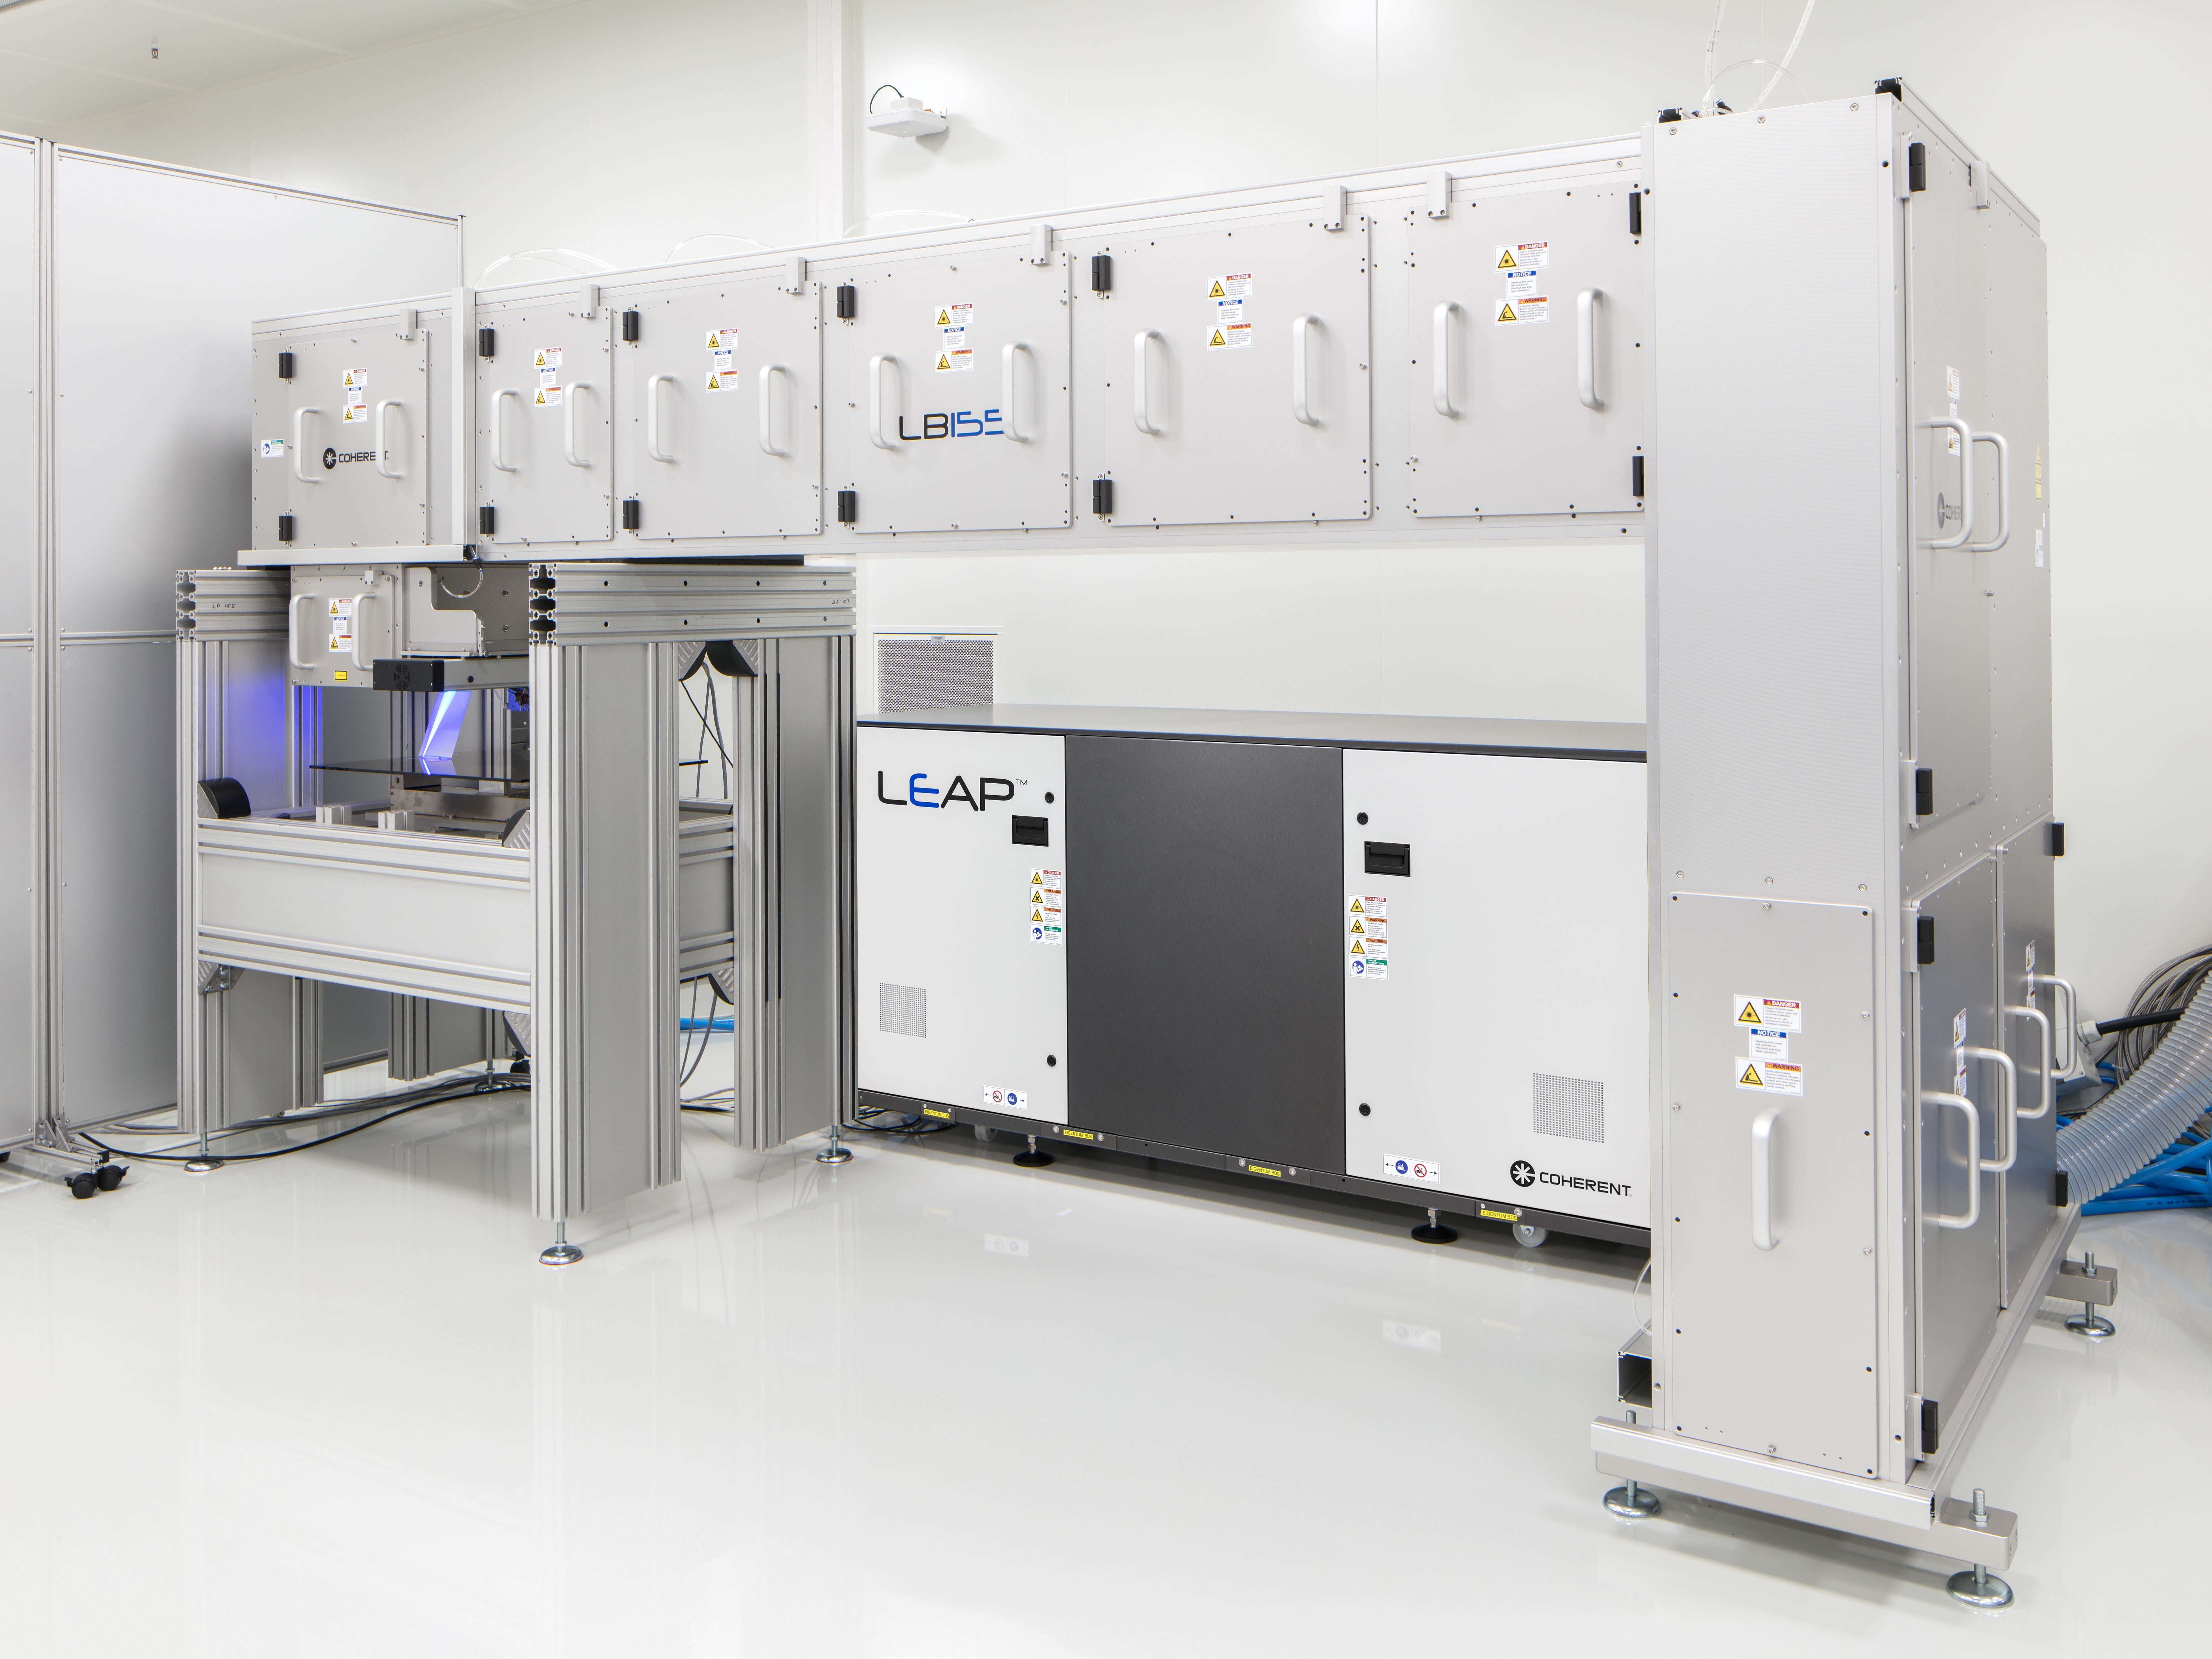 Ab sofort steht am Fraunhofer ILT ein neues Excimerlaser-System für die Verfahrensentwicklung bei der Mikrobearbeitung von Oberflächen zur Verfügung.